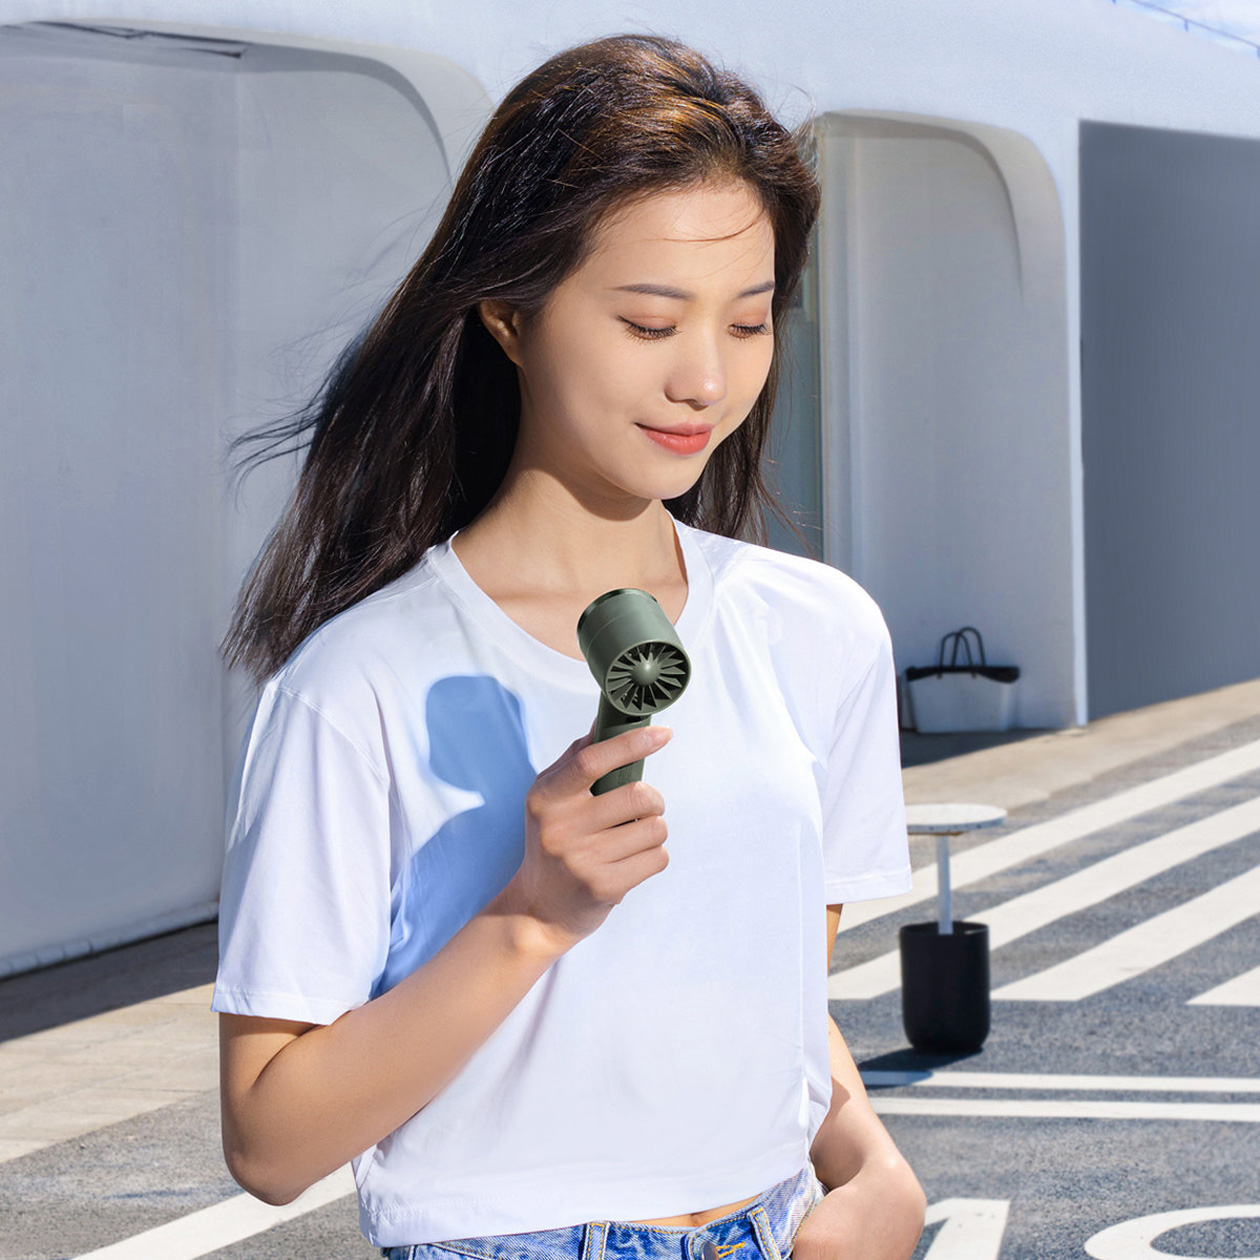 Портативный мини-вентилятор Baseus Flyer Turbine Handheld Fan удобно носить в руке. Работает от аккумулятора, можно запитать от смартфона. Источник: Baseus